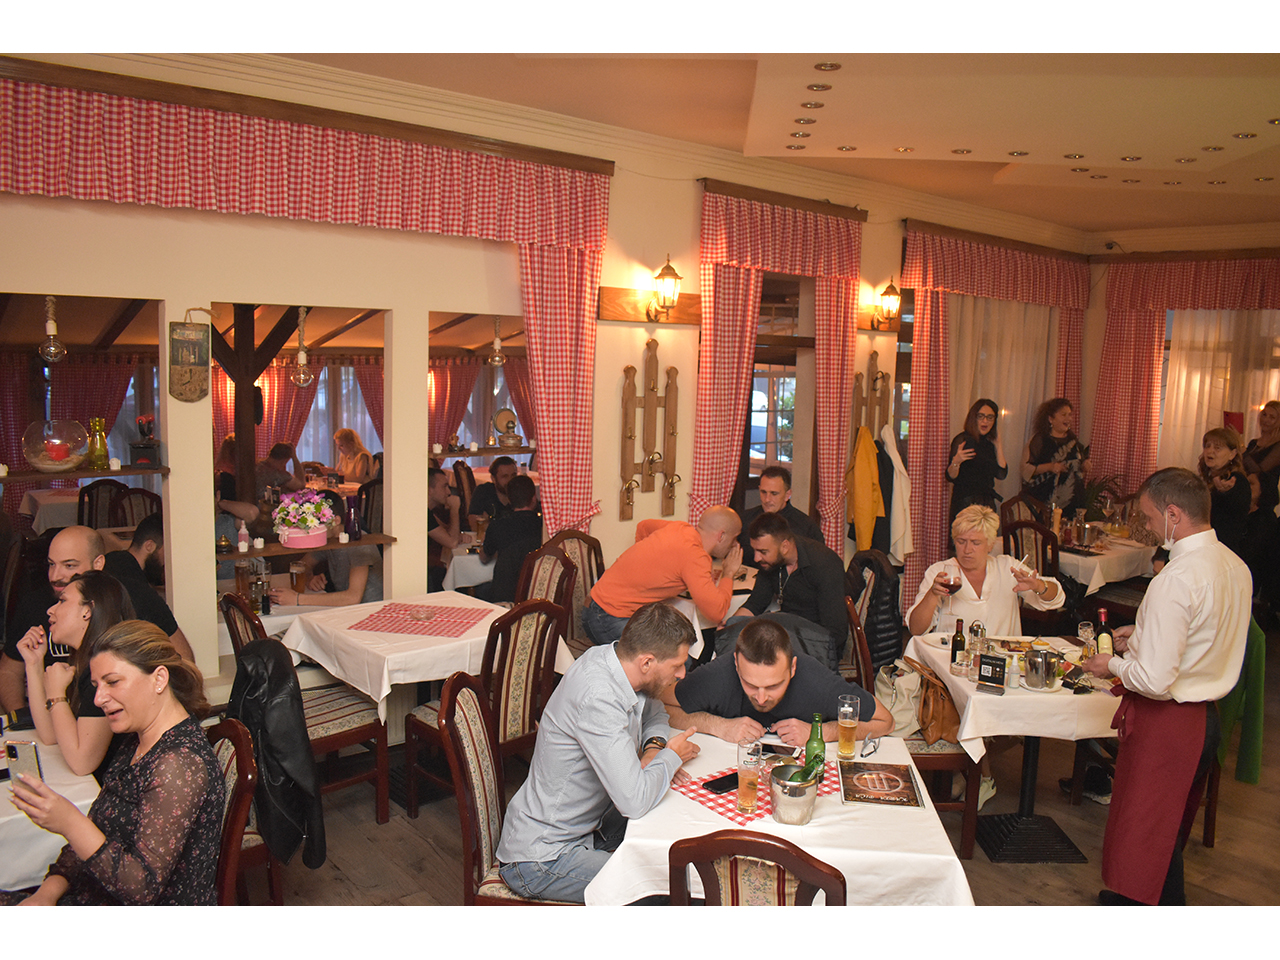 ART MODENA RESTAURANT Restaurants for weddings, celebrations Beograd